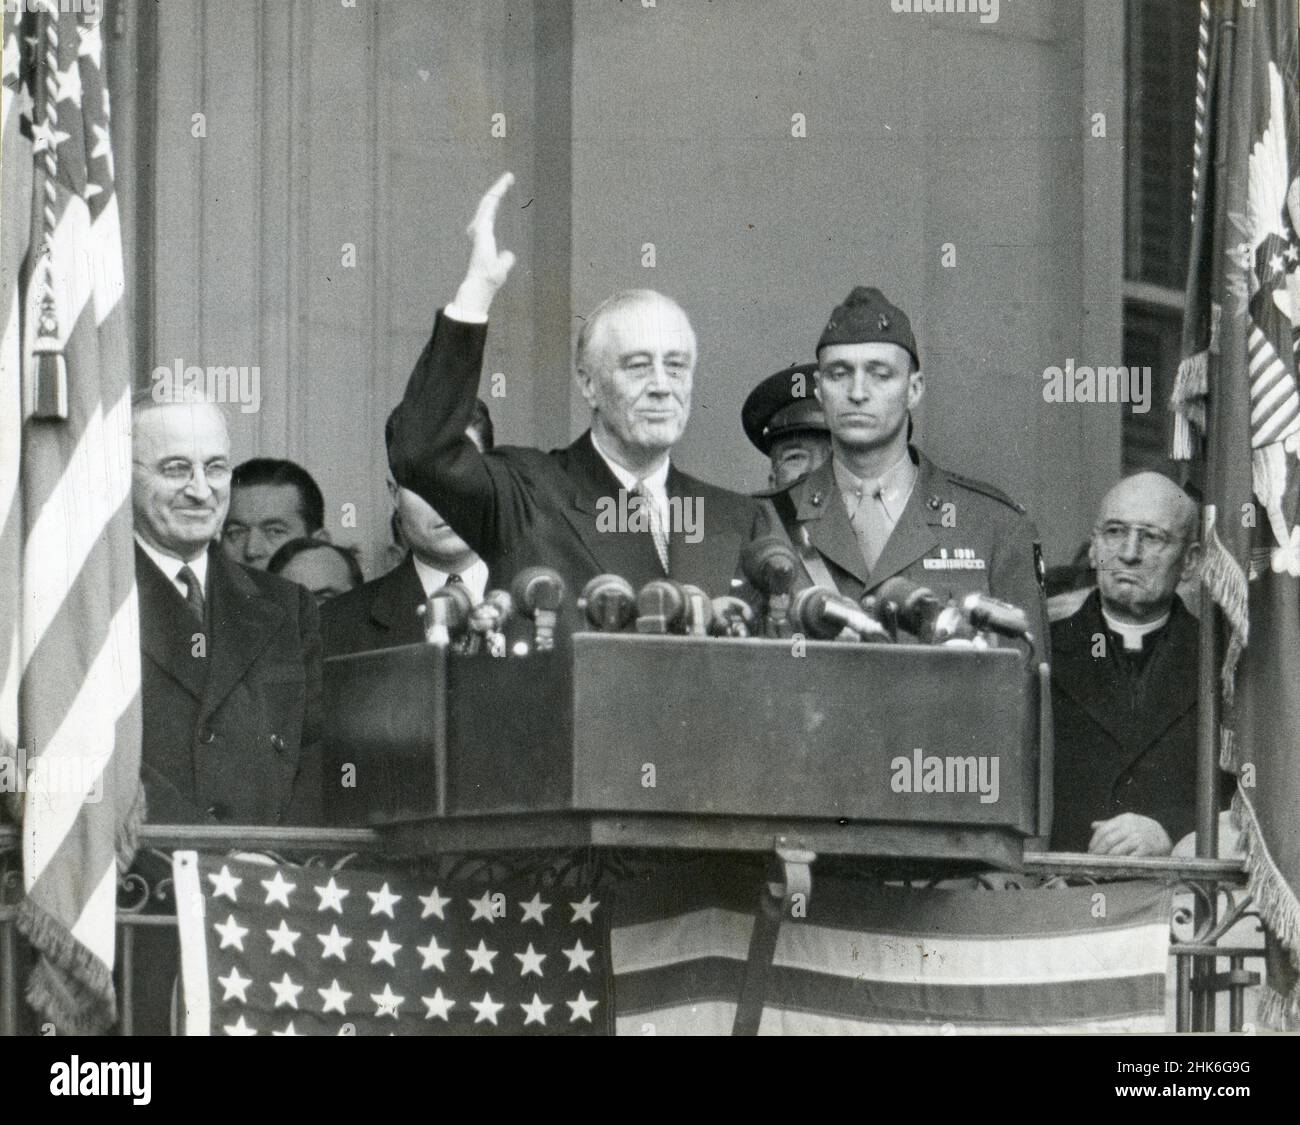 20 janvier 1945, Washington, DC - Franklin Delano Roosevelt montré juste après avoir pris son serment de 4th.La cérémonie n'a duré que 15 minutes.Le vice-président Harry Truman est à gauche et le fils de Roosevelt, James, se trouve à côté de son père, Washington, DC. Banque D'Images